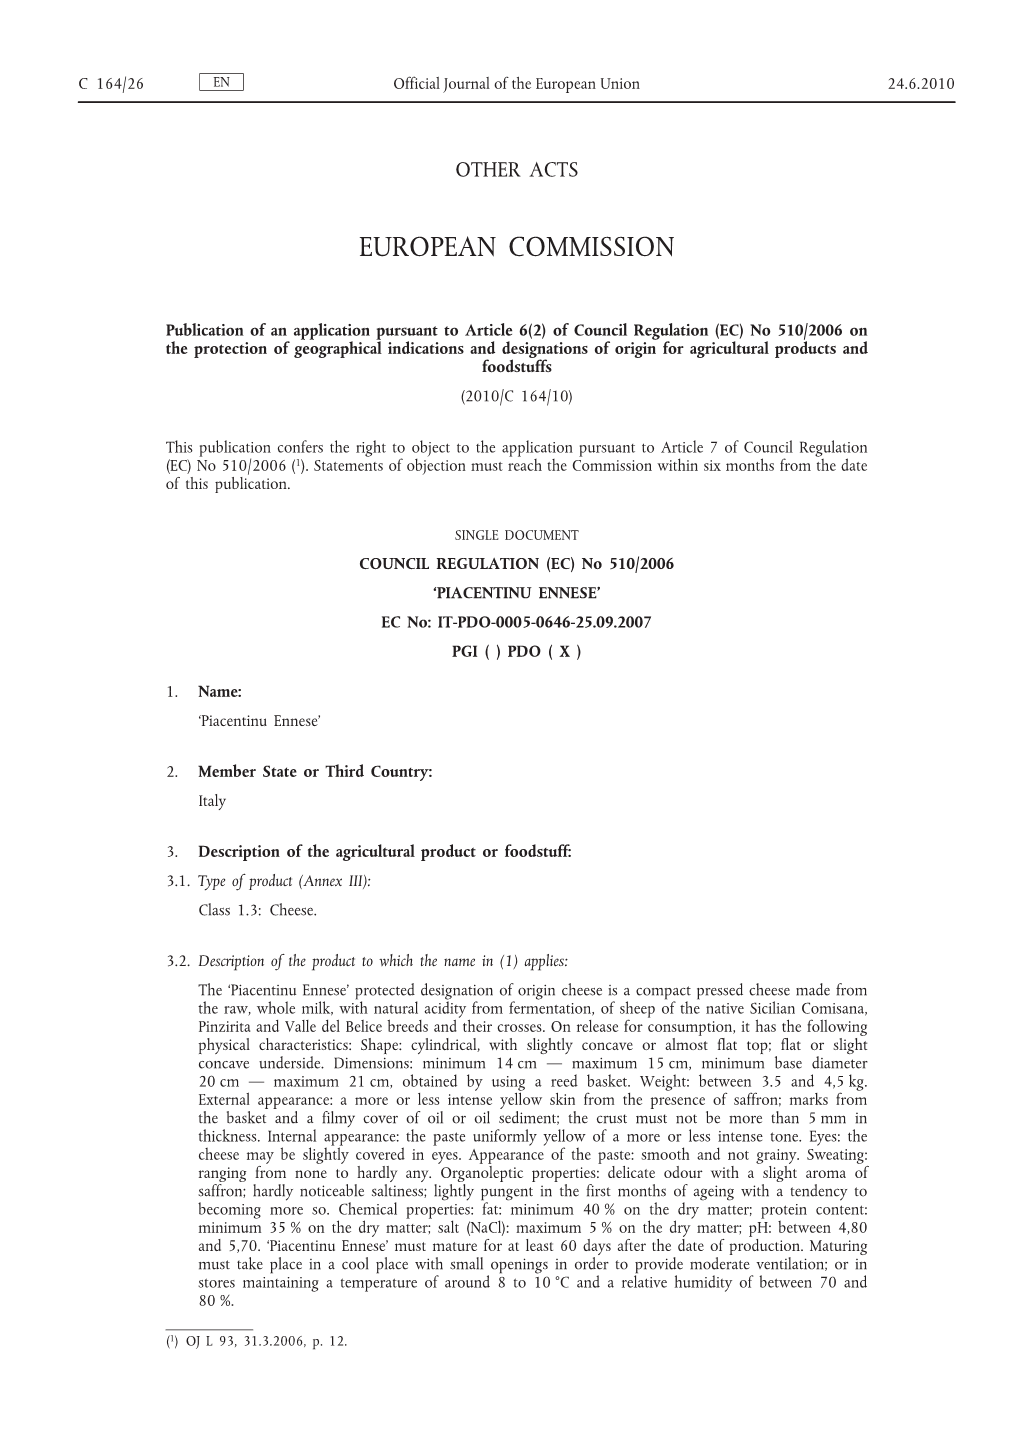 Of Council Regulation (EC) No 510